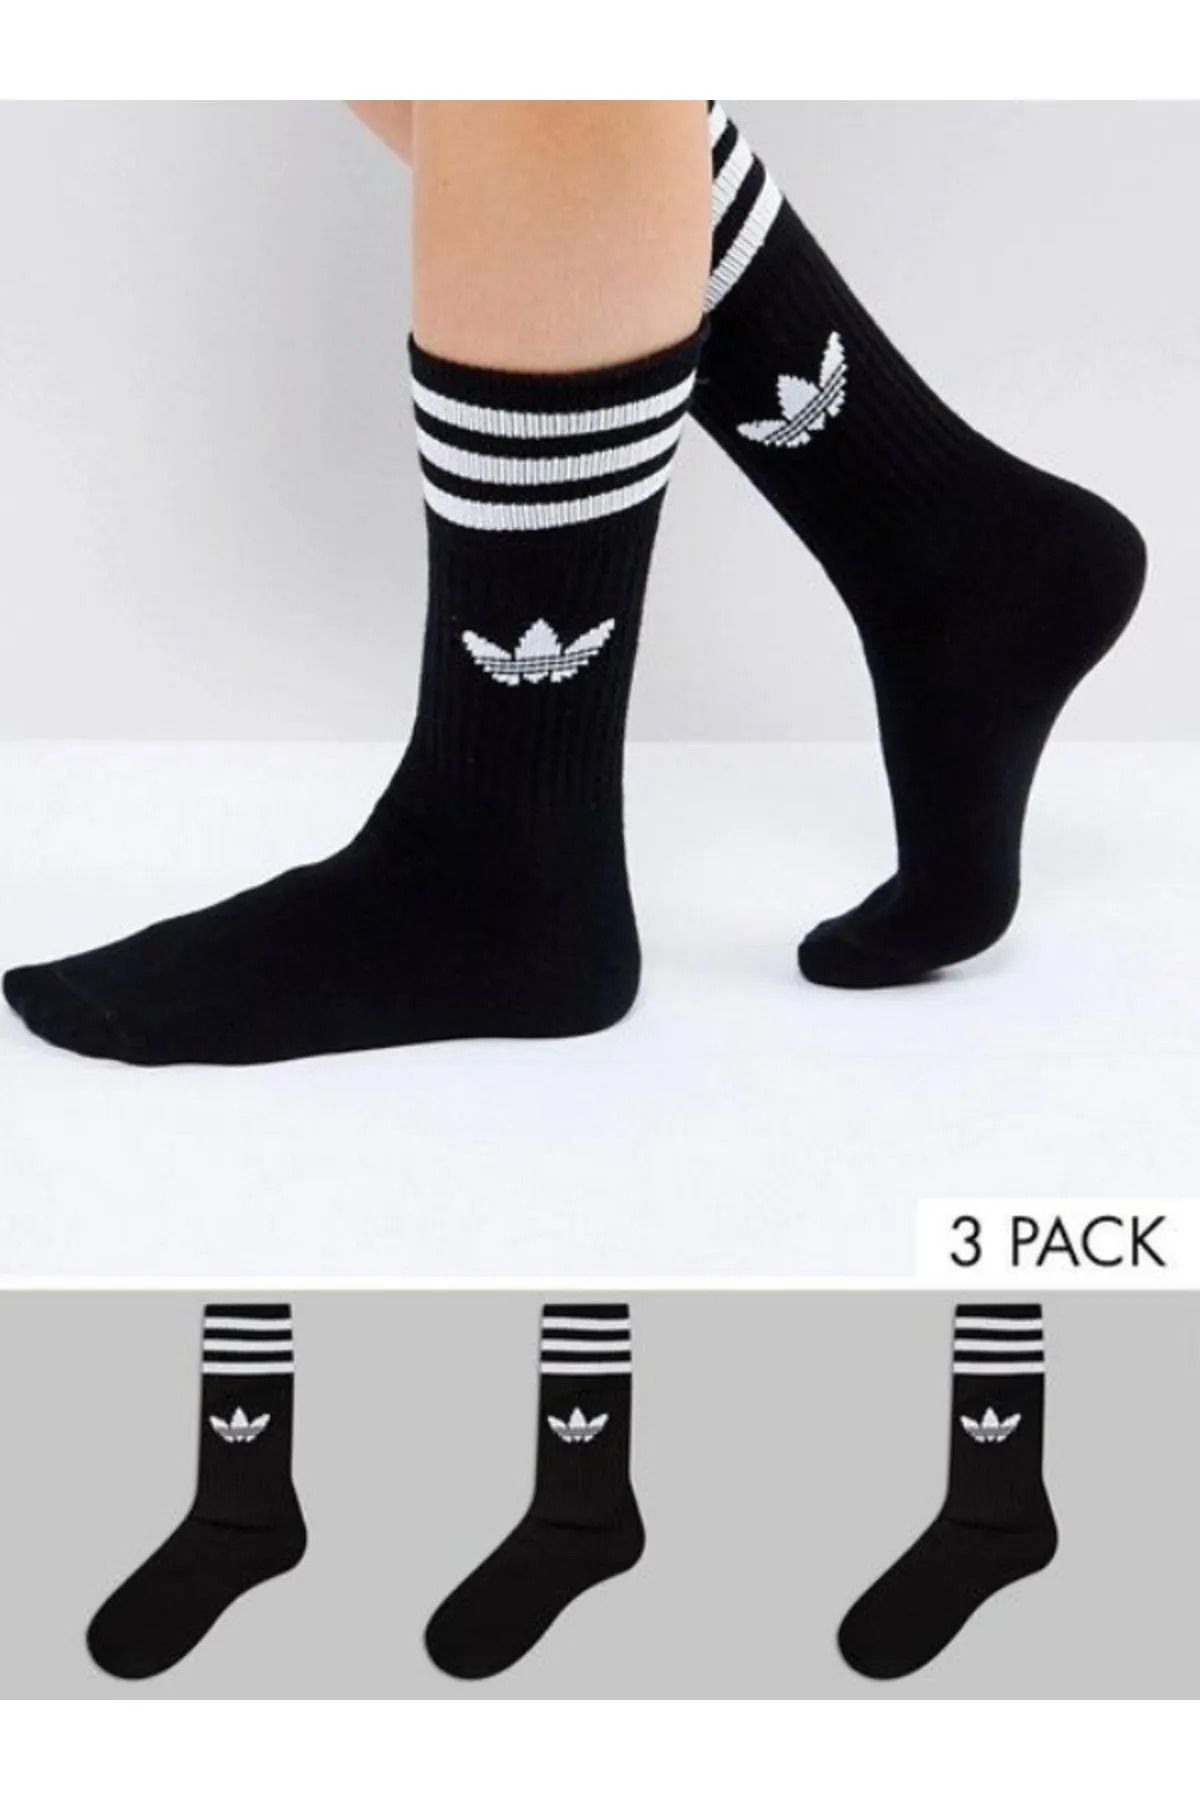 Socks Sirius 3'lü Unisex Penye Antrenman Siyah&Beyaz Çizgili Spor Tenis Futbol Basketbol Koşu Çorap Seti